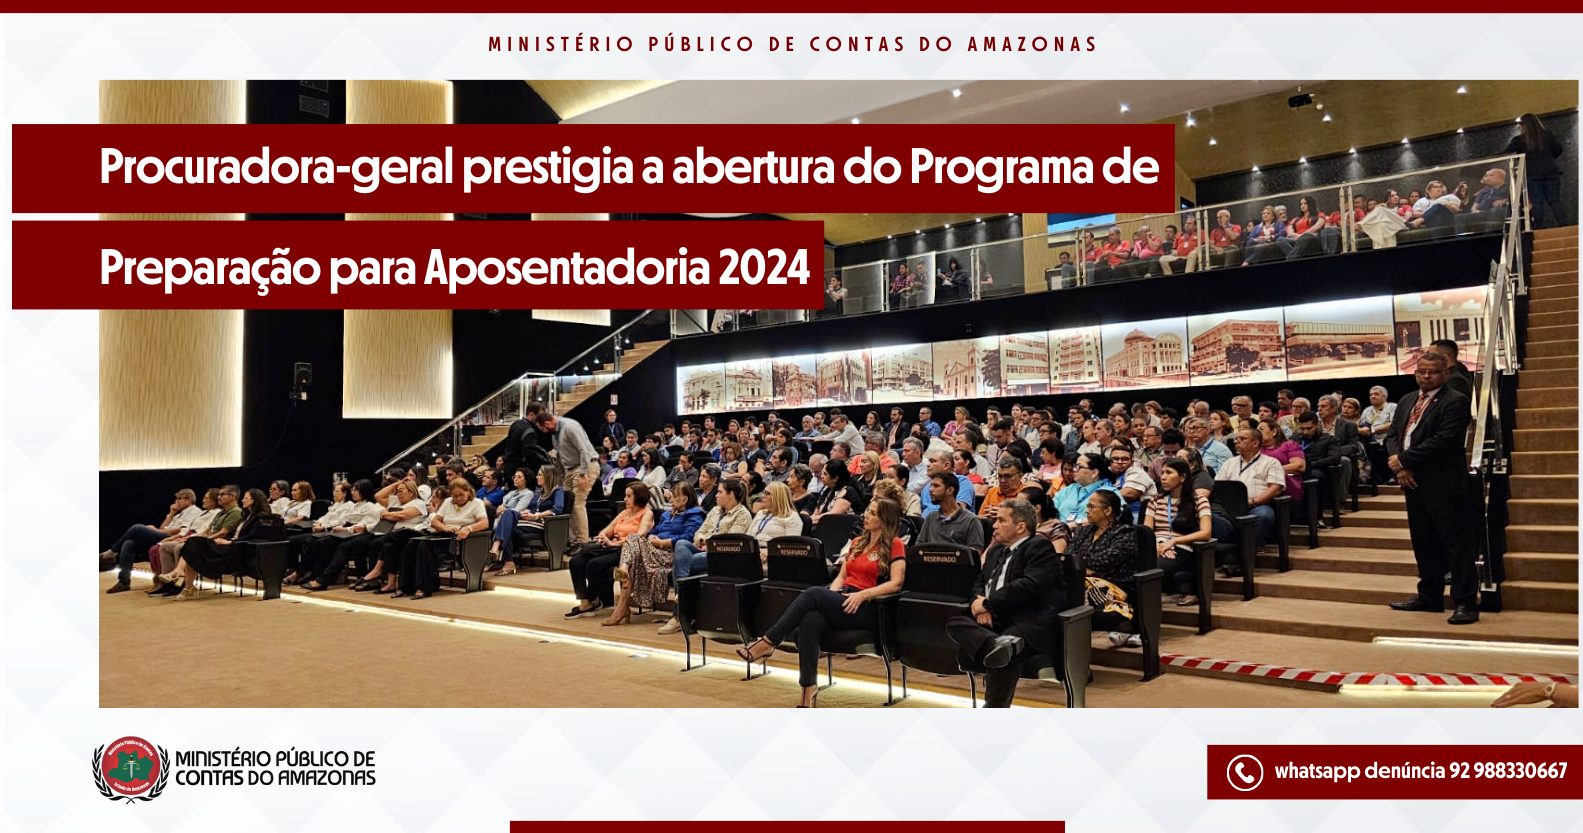 Procuradora-geral prestigia a abertura do Programa de Preparação para Aposentadoria 2024